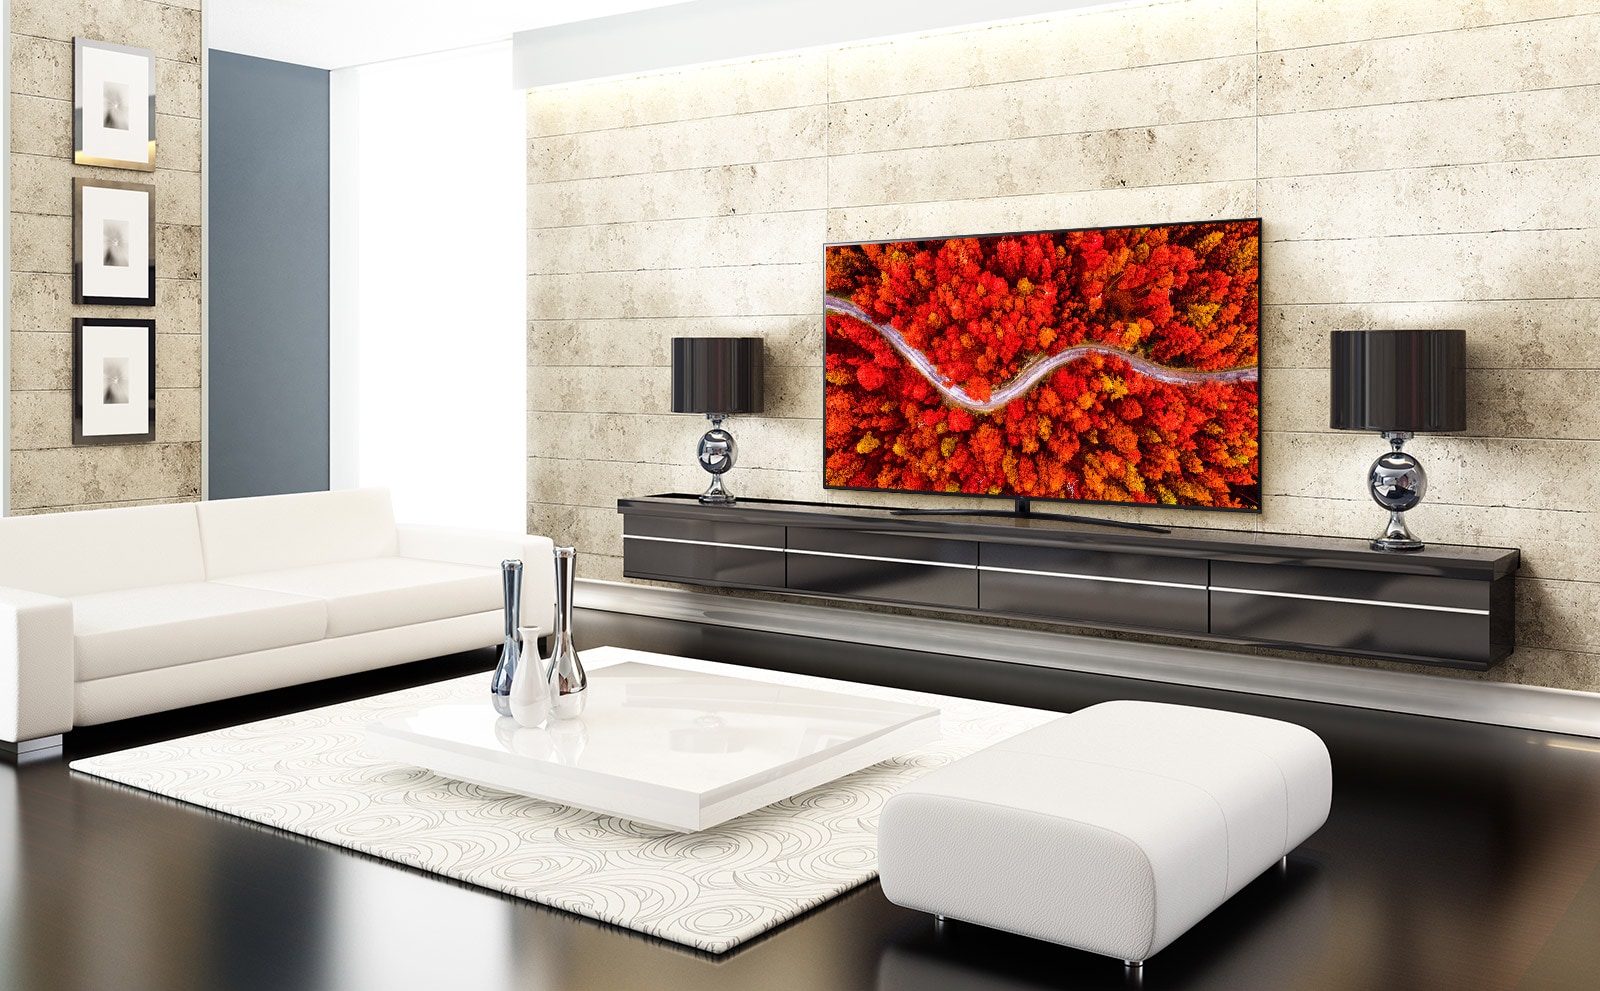 Greznā viesistabā atrodas televizors, kurā attēlots skats no putna lidojuma uz sarkanu mežu.